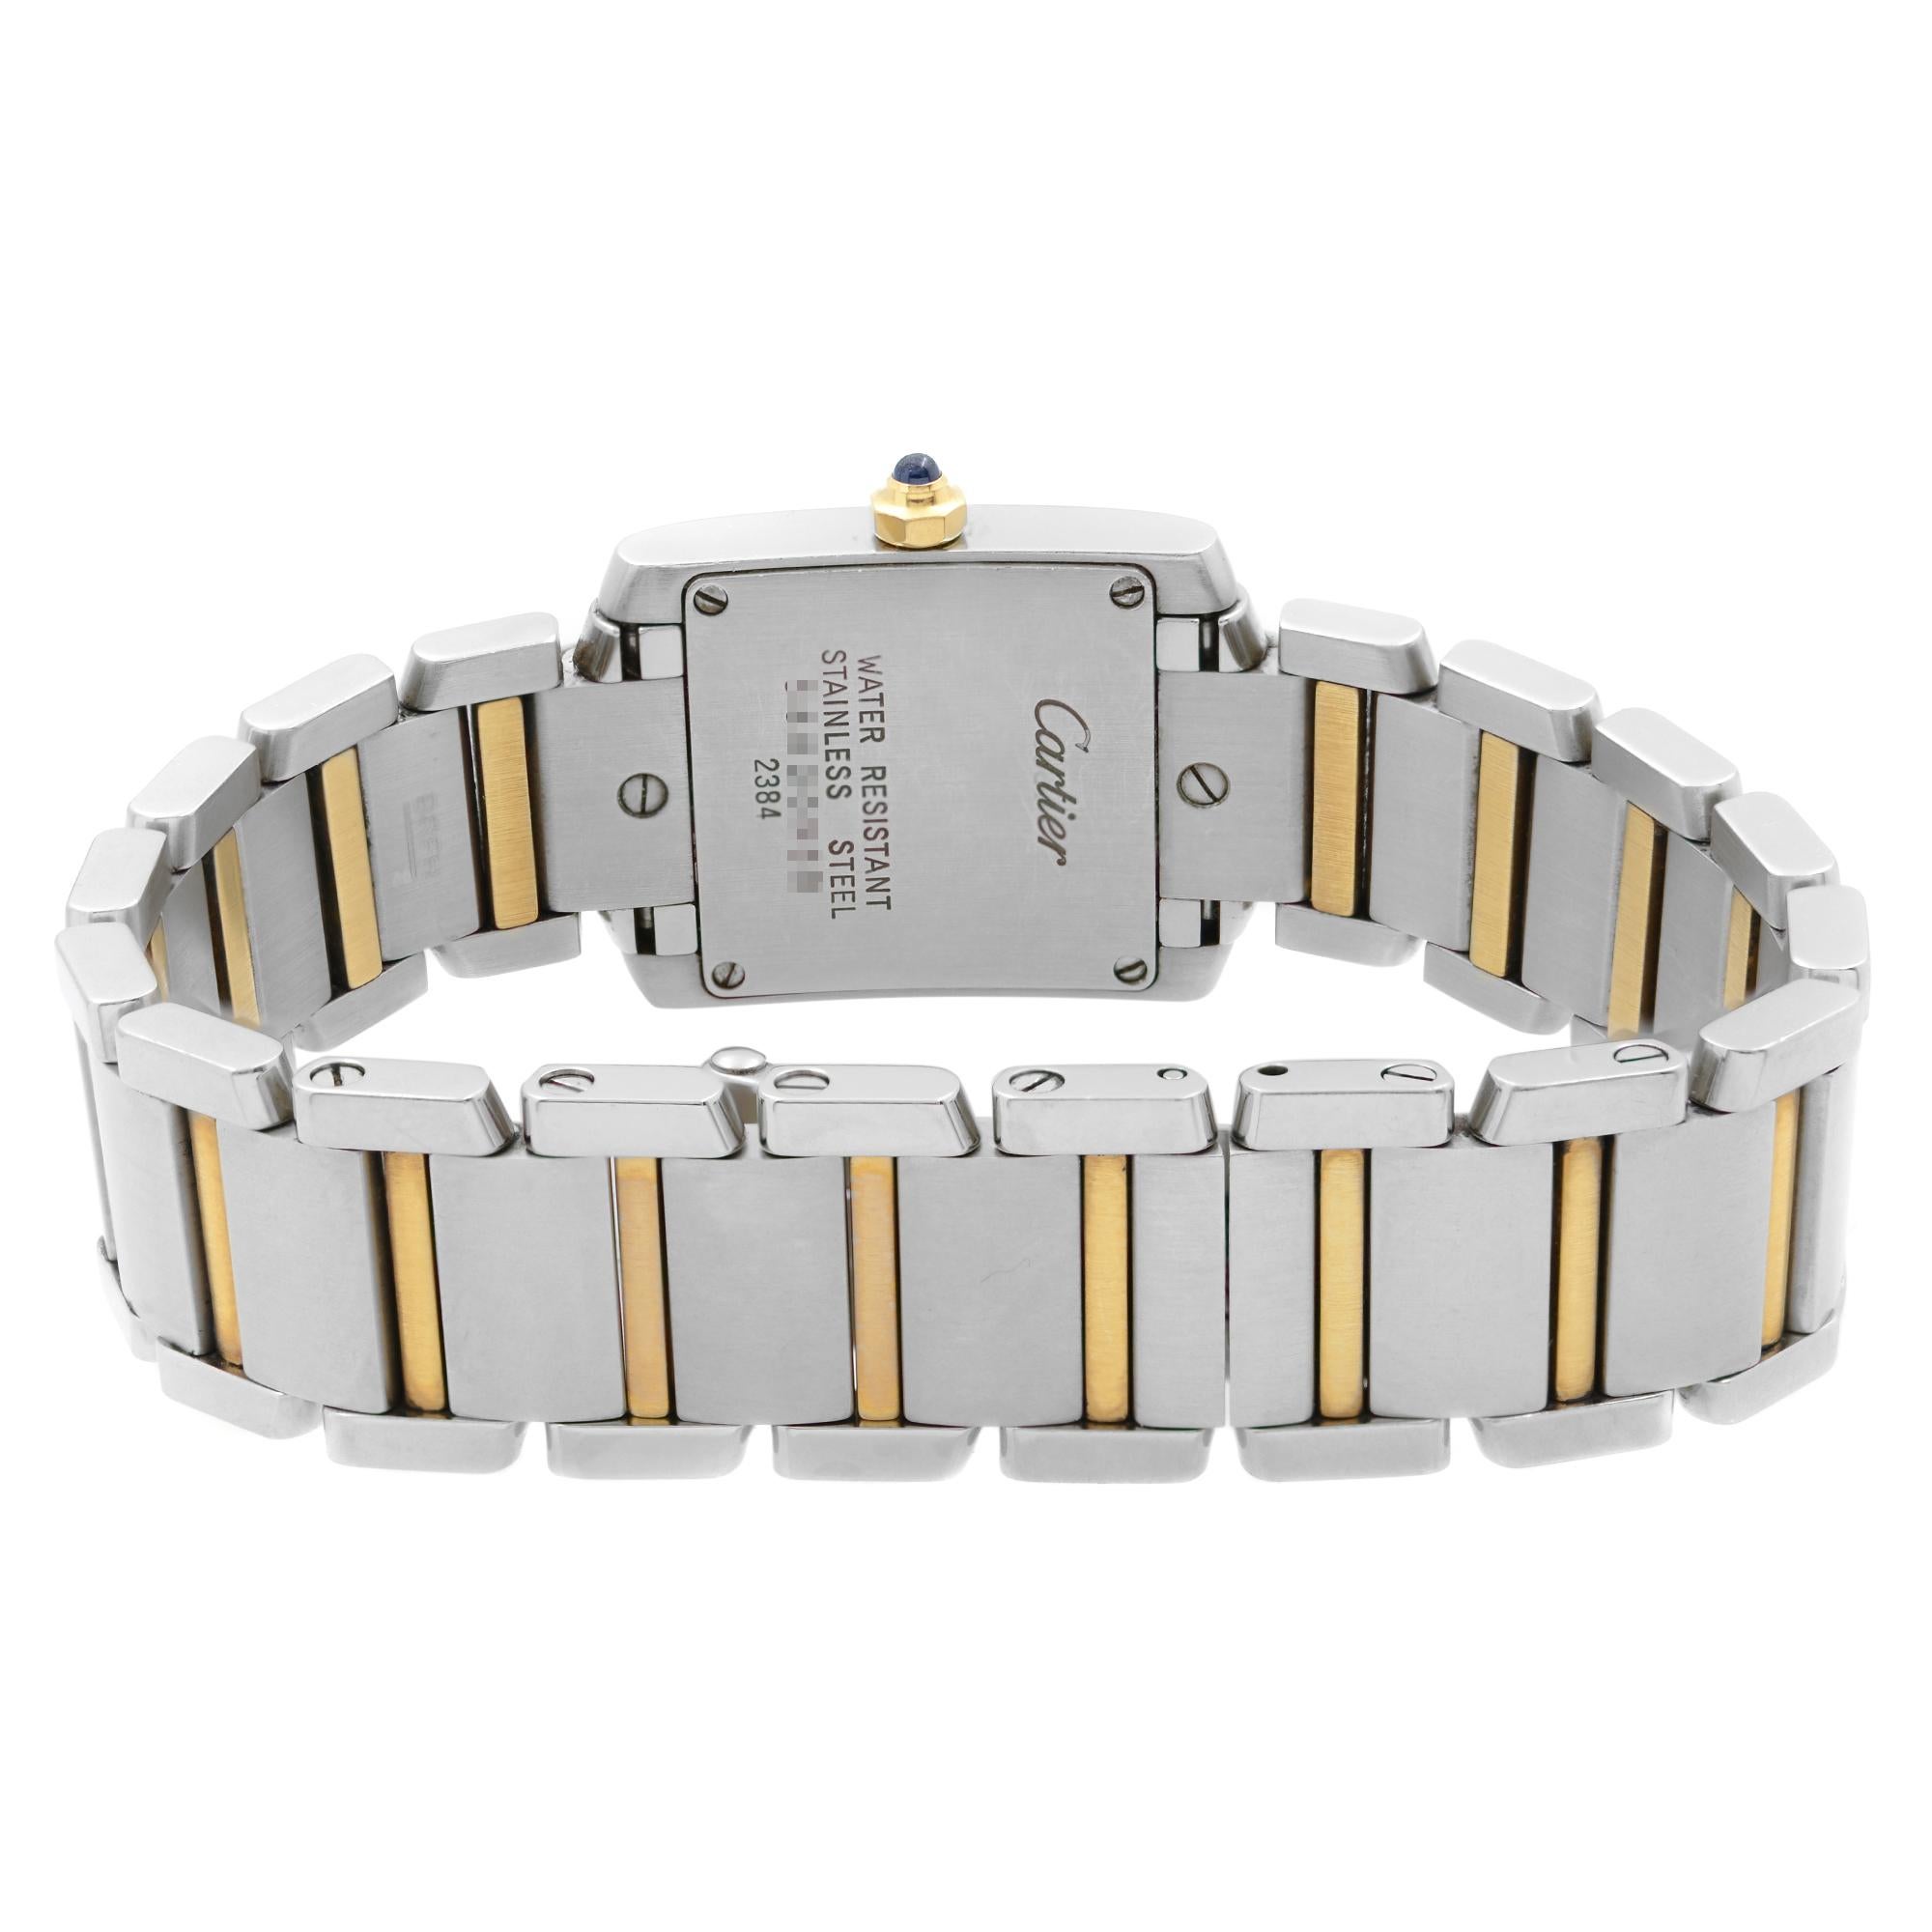 Cartier Tank Francaise Steel Gold White Roman Dial Ladies Quartz Watch W51007Q4 1